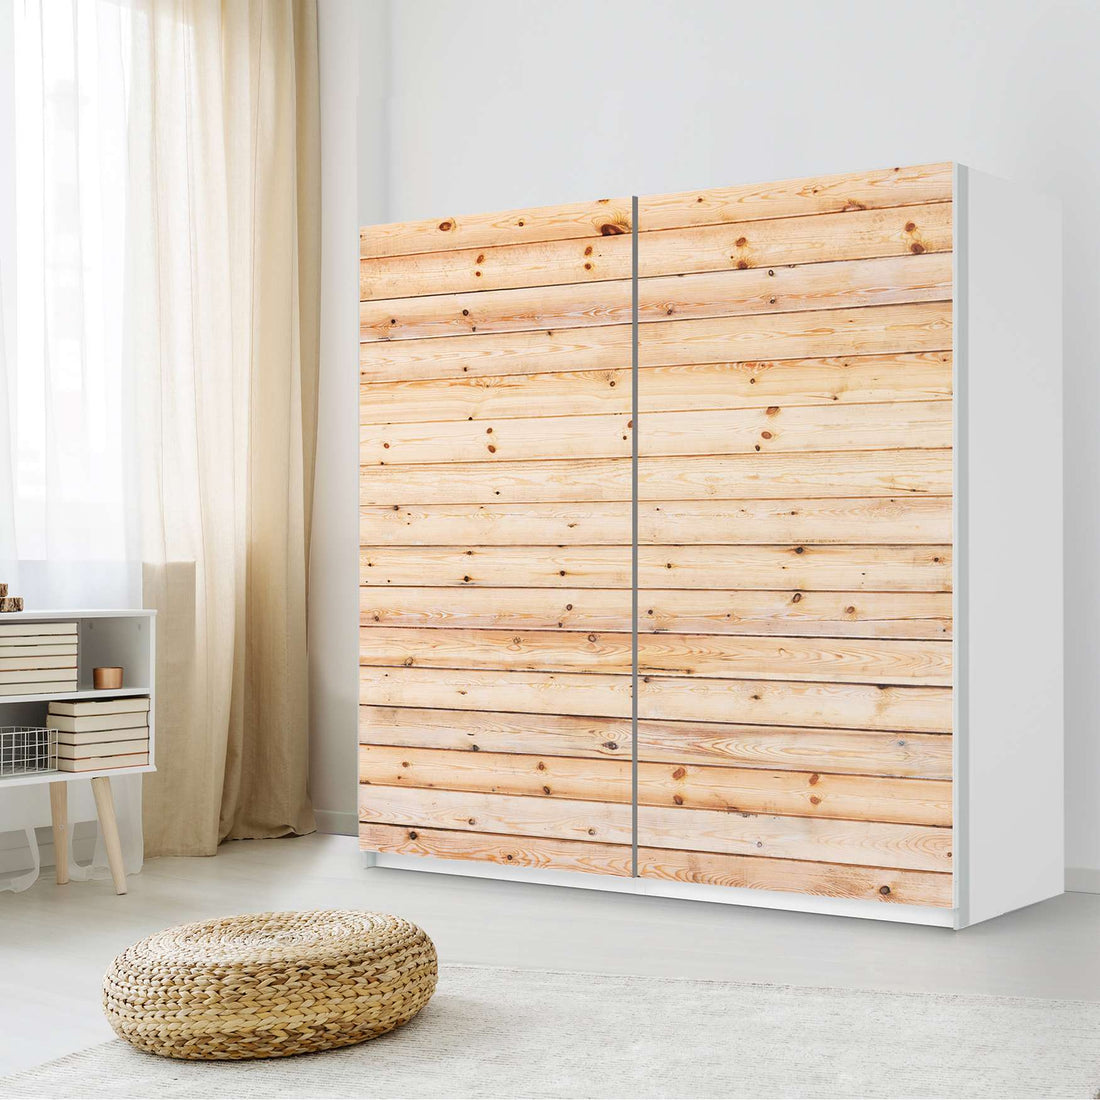 Möbel Klebefolie Bright Planks - IKEA Pax Schrank 201 cm Höhe - Schiebetür - Schlafzimmer